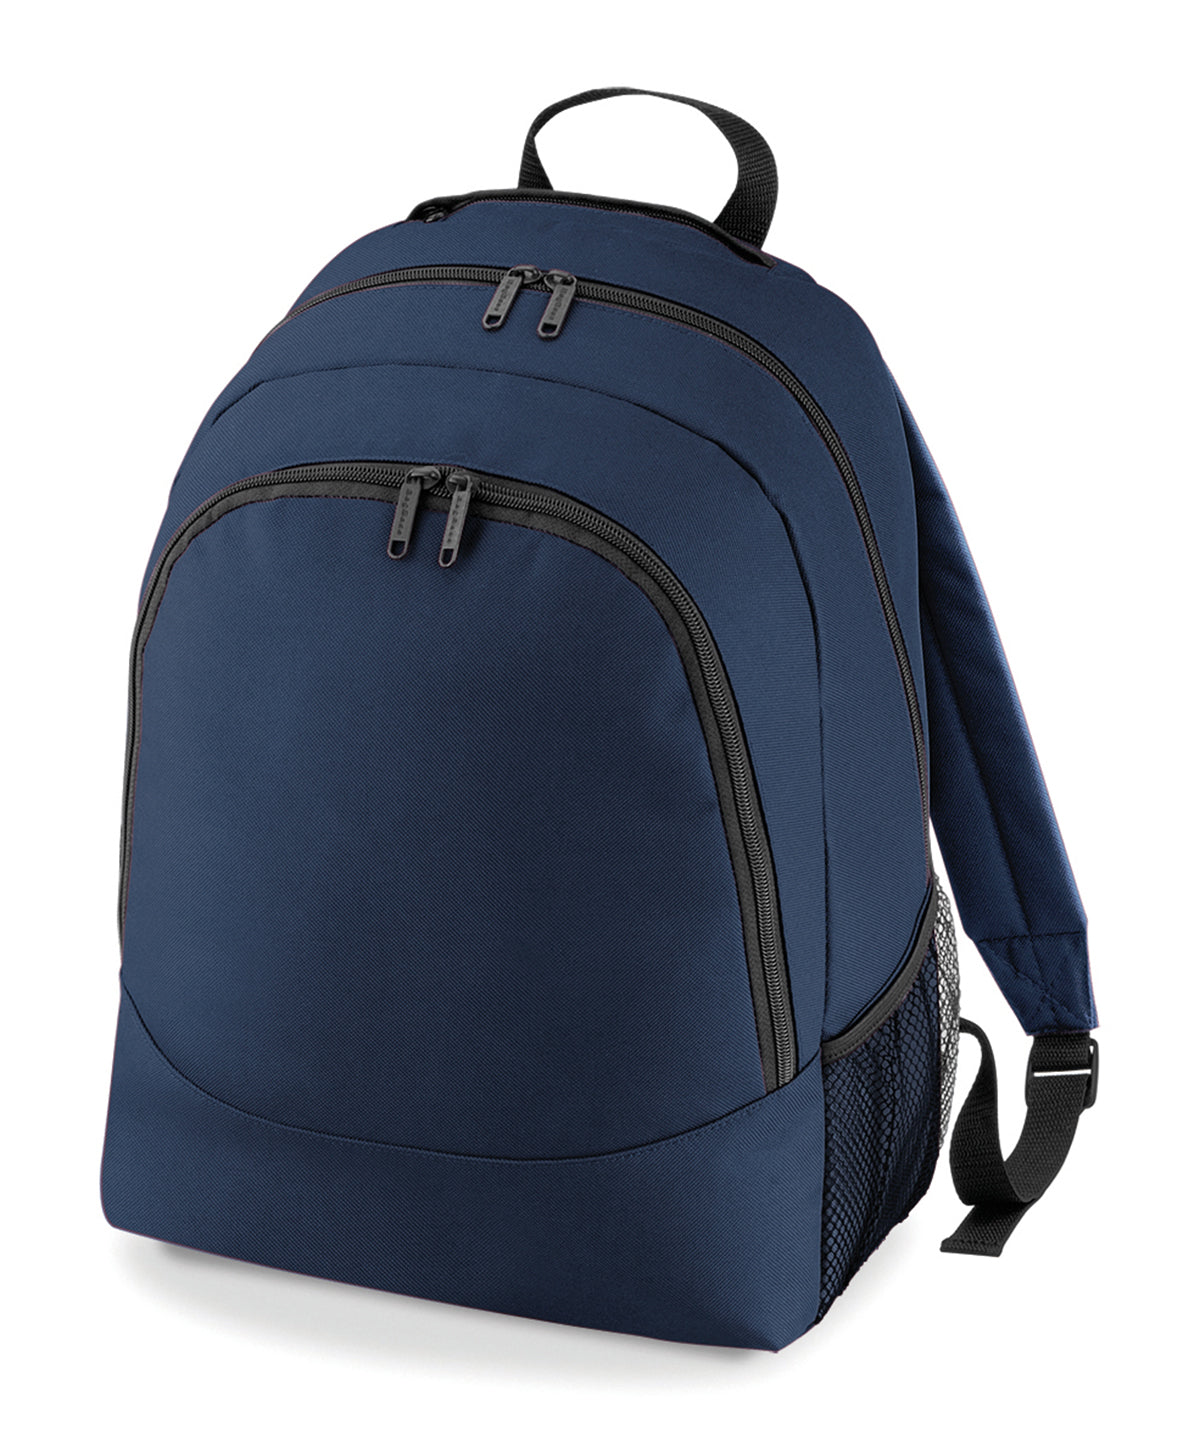 Töskur - Universal Backpack